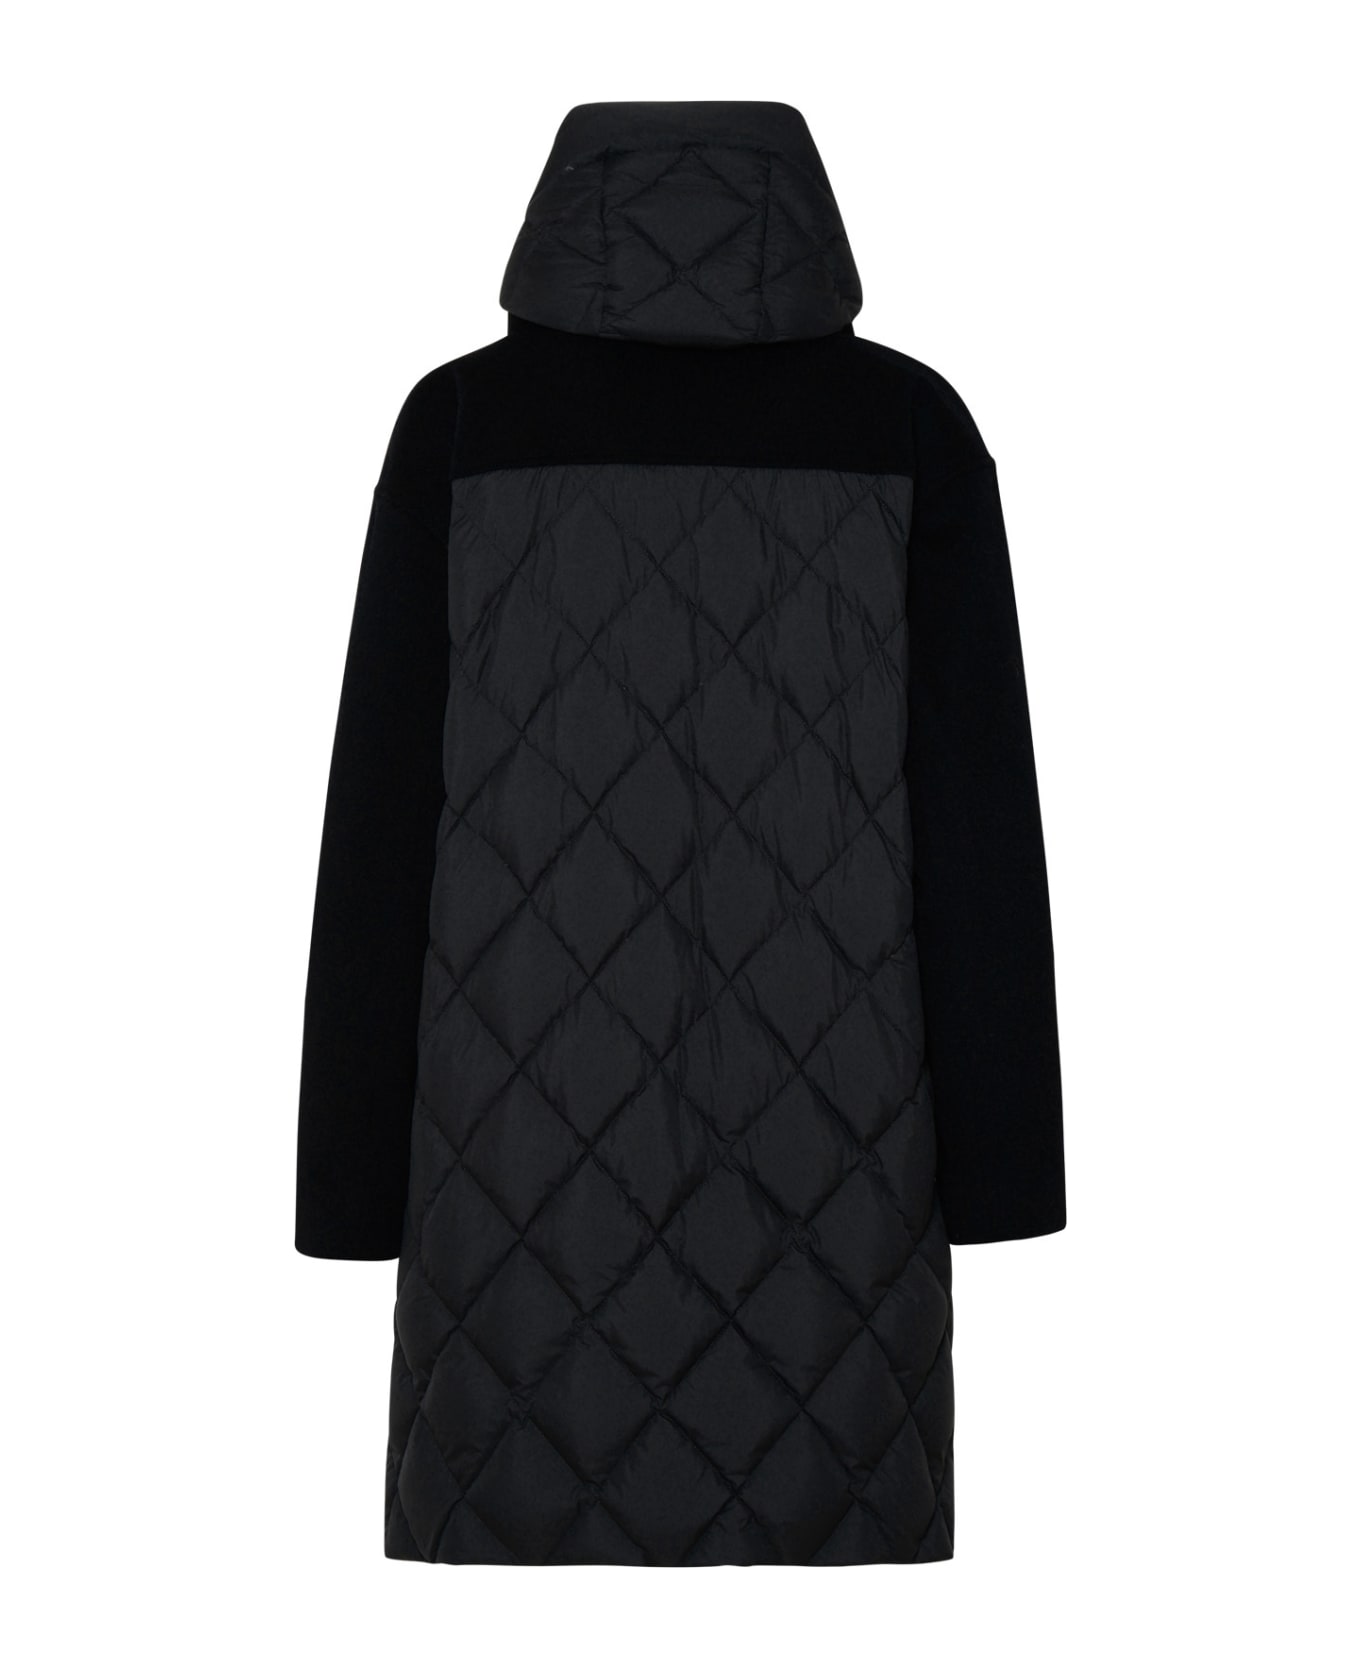 Woolrich 'kuna' Parka In Black Cashmere Blend - Black コート